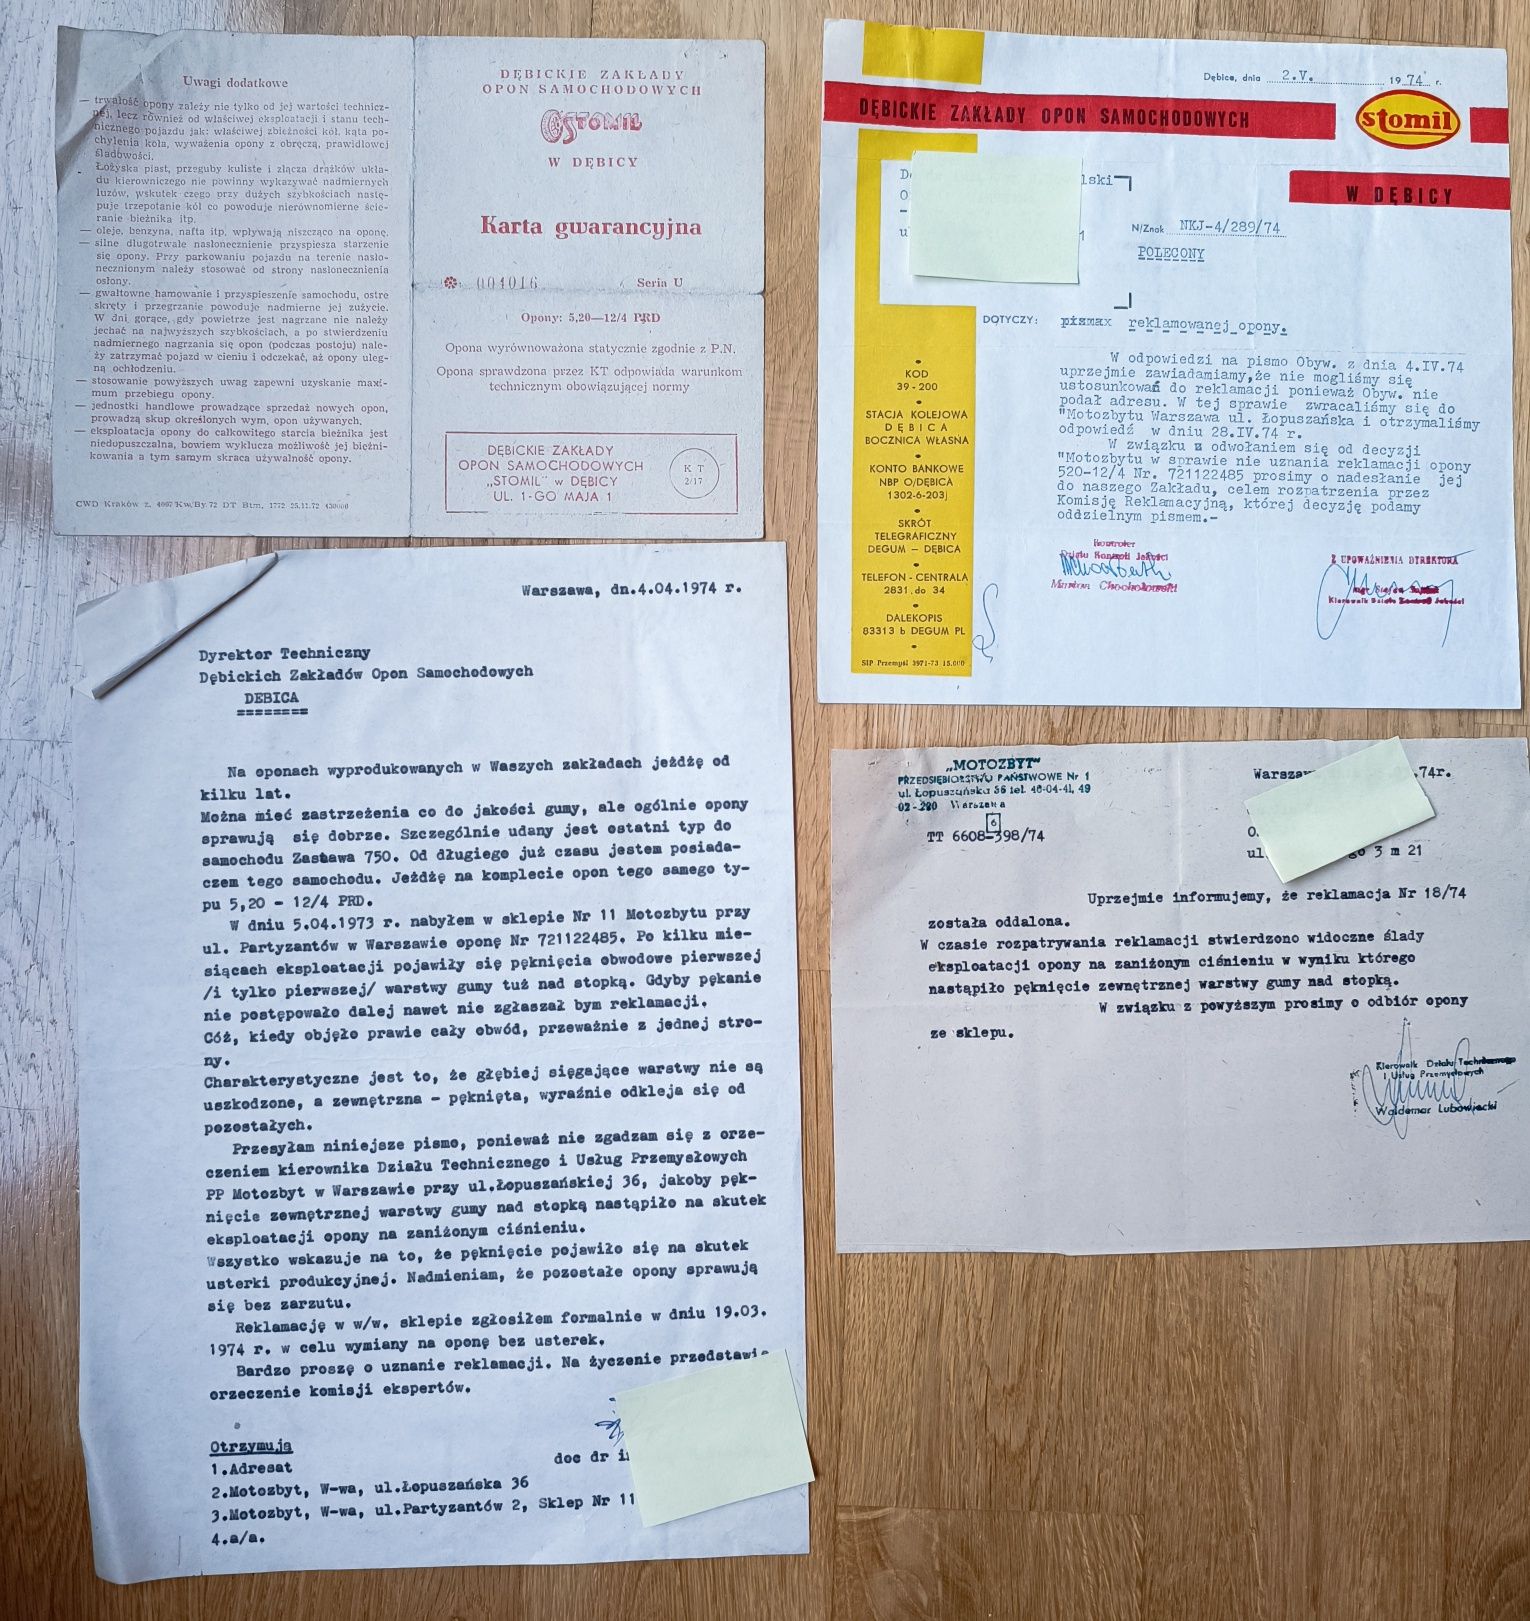 Karta gwarancyjna opon Stomil 1973 i reklamacja prl motoryzacja l